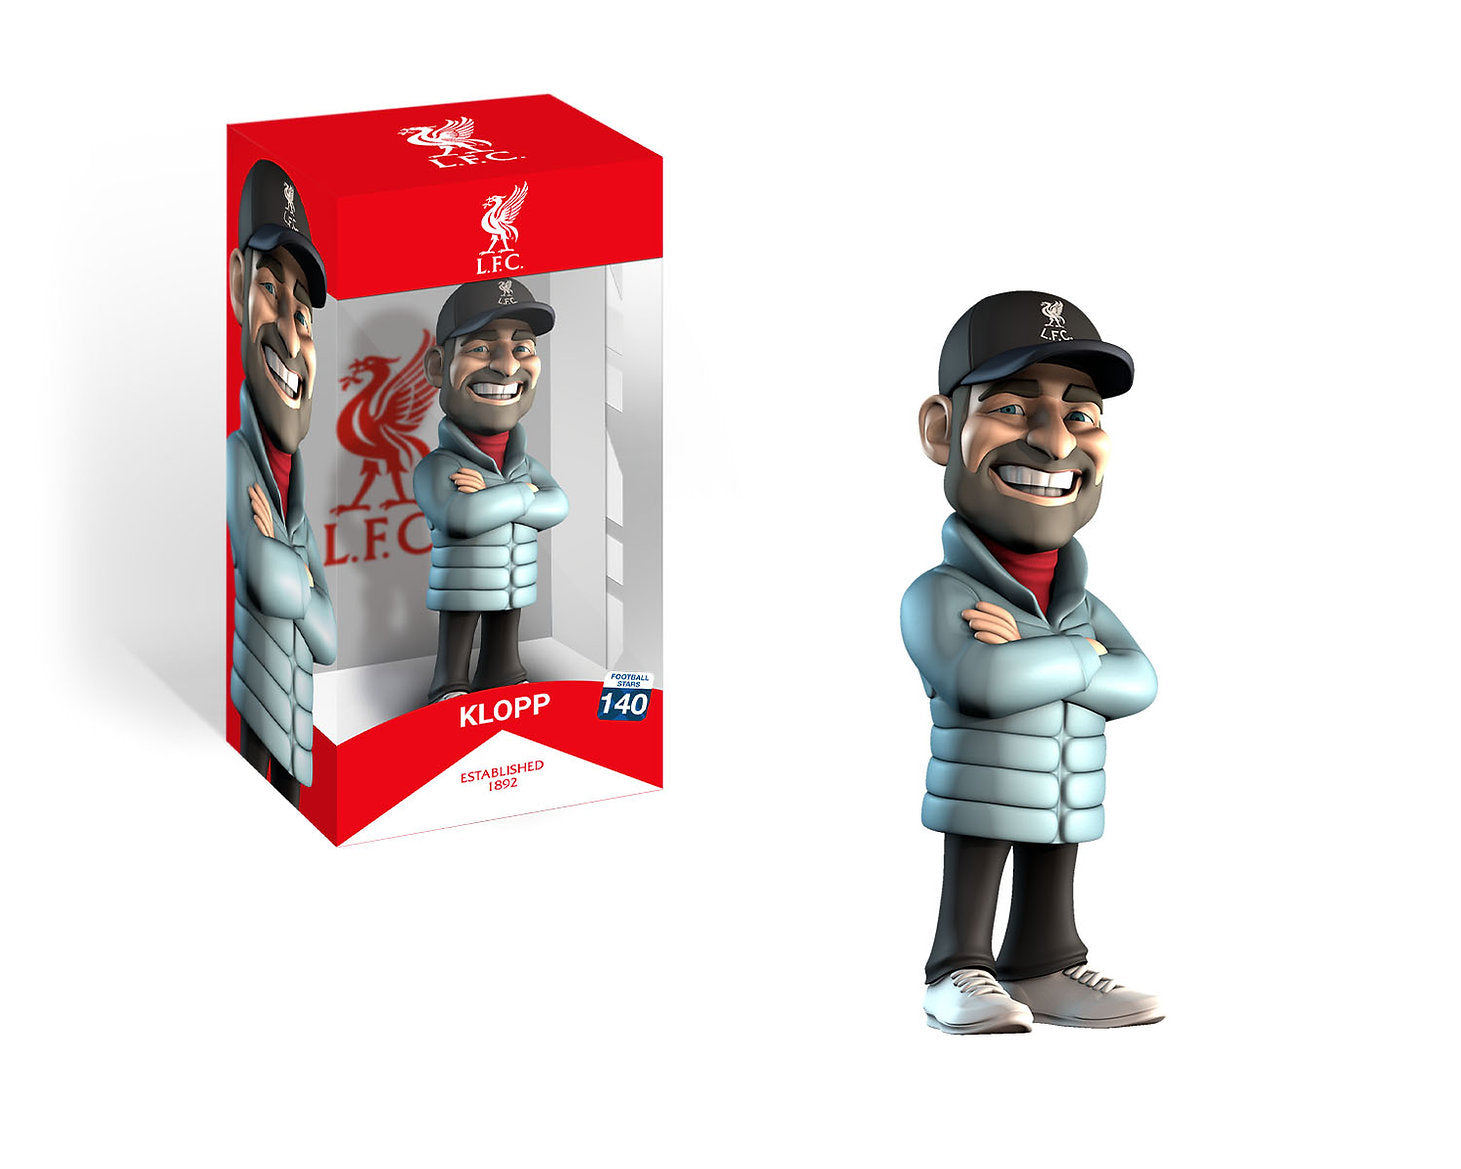 Minix - Football Stars #140 - Liverpool Football Club - Jürgen Klopp - Figurine 12cm